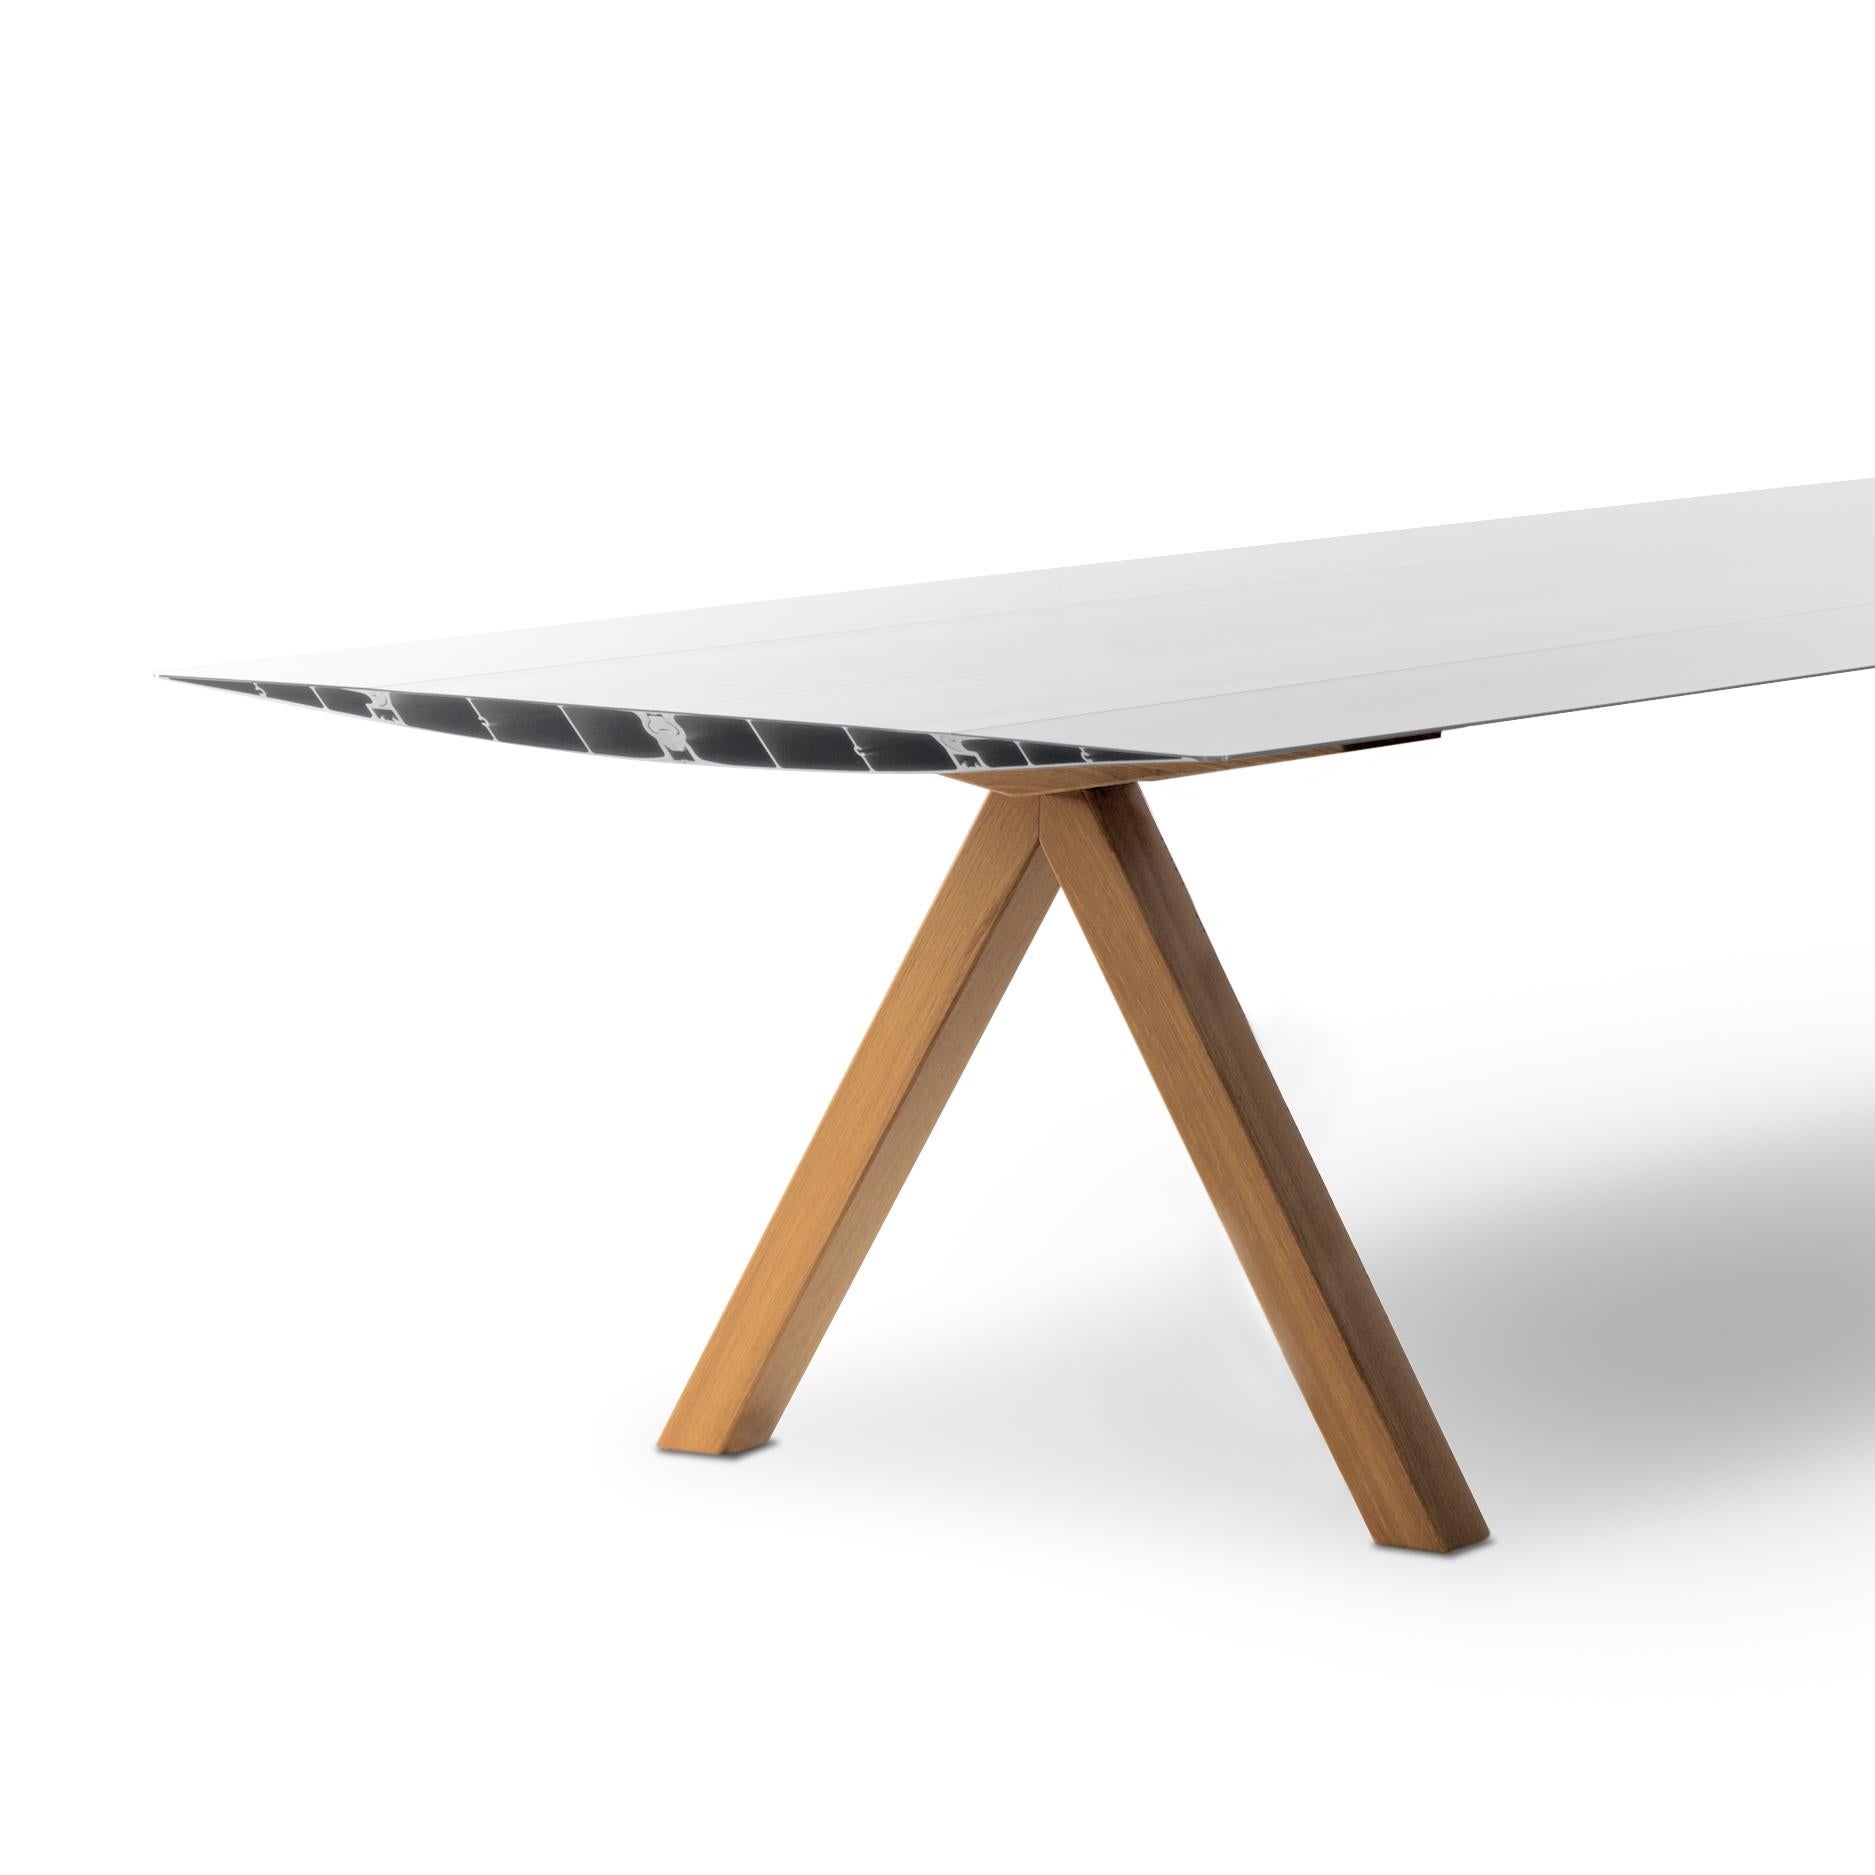 Table conçue par Konstantin Grcic conçue en 2009 fabriquée par BD Barcelona.

La Table B, qui a inauguré la collection Extrusions en 2009, peut atteindre cinq mètres grâce à un simple profilé d'aluminium extrudé. Son apparente simplicité recouvre